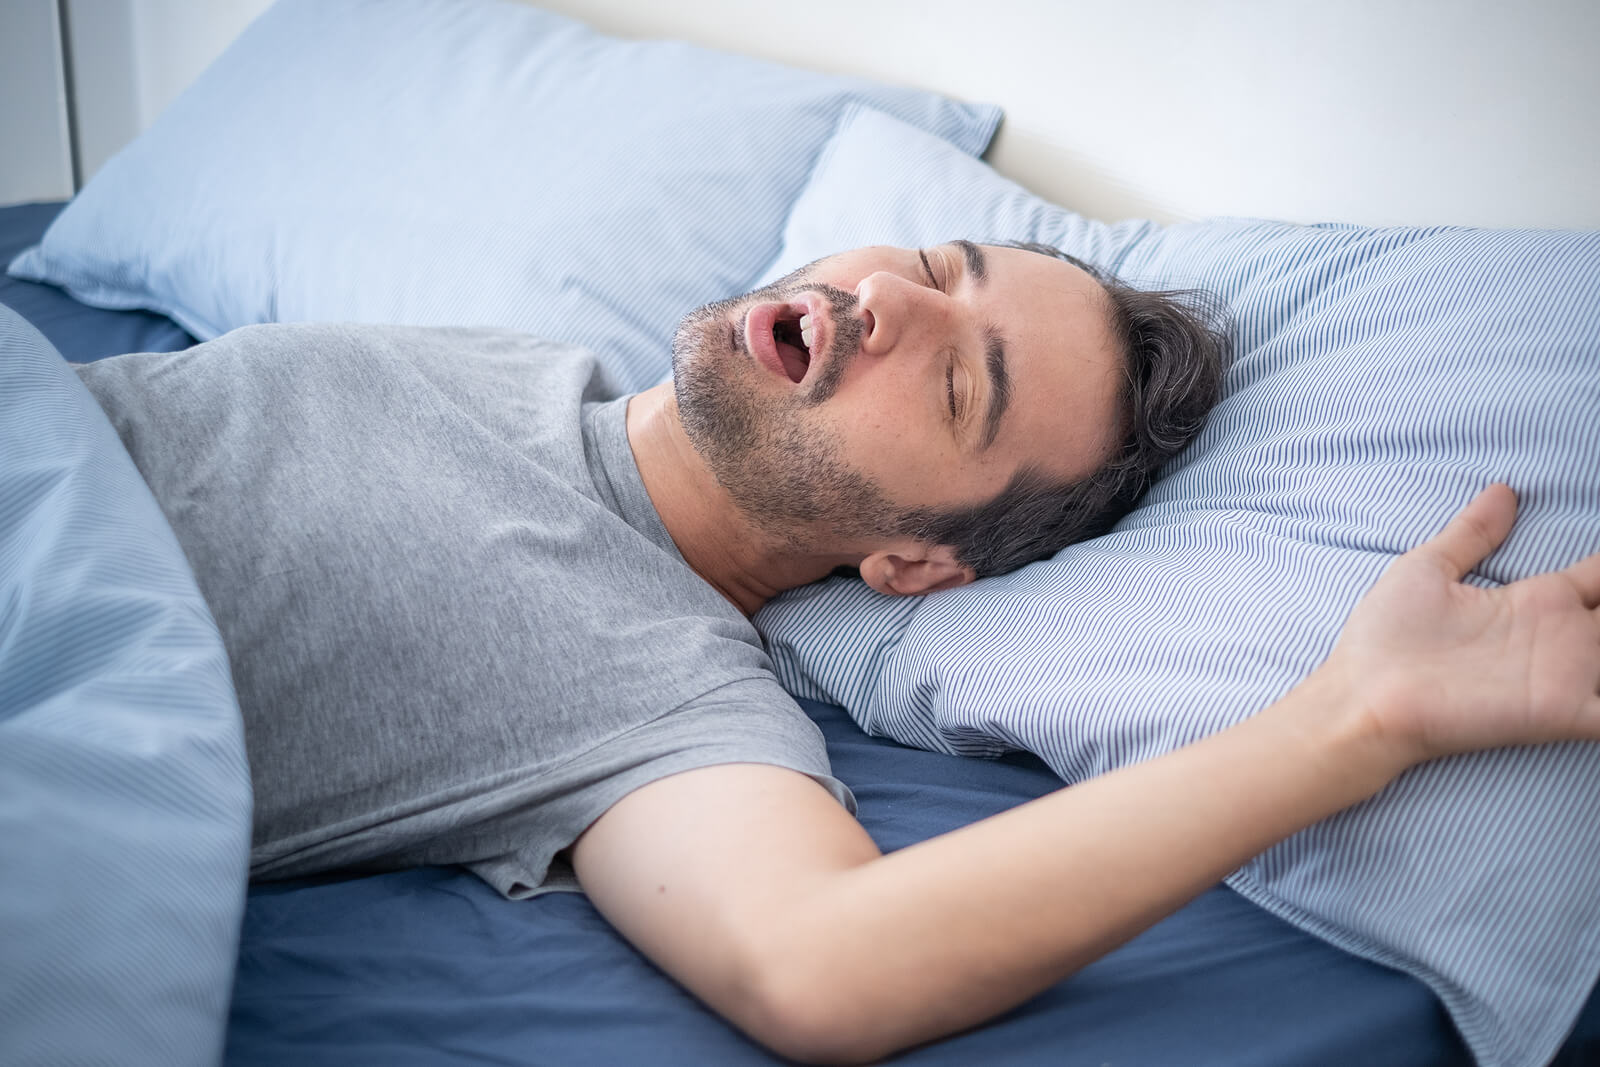 Mecánica Descuidado carencia Cómo combatir la apnea del sueño con 5 remedios naturales - Mejor con Salud